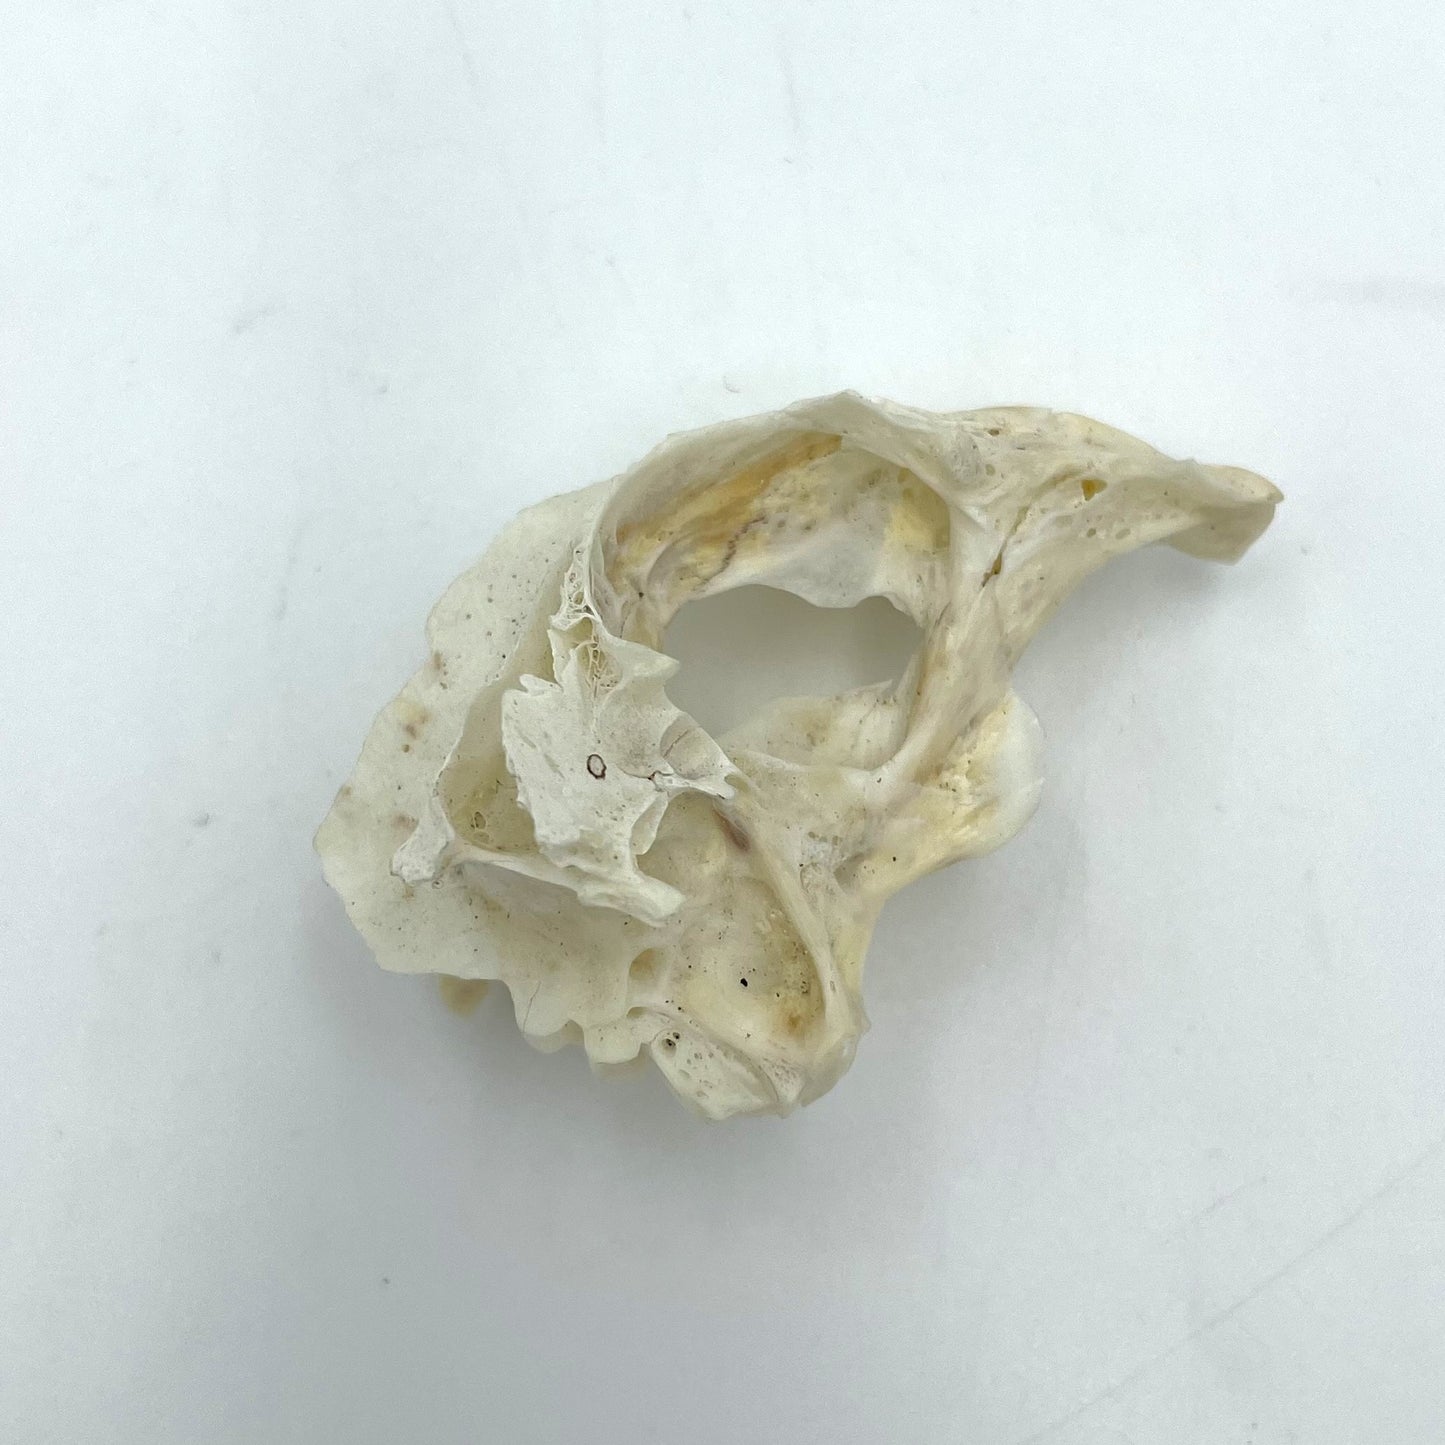 Fish Skull - 6cm